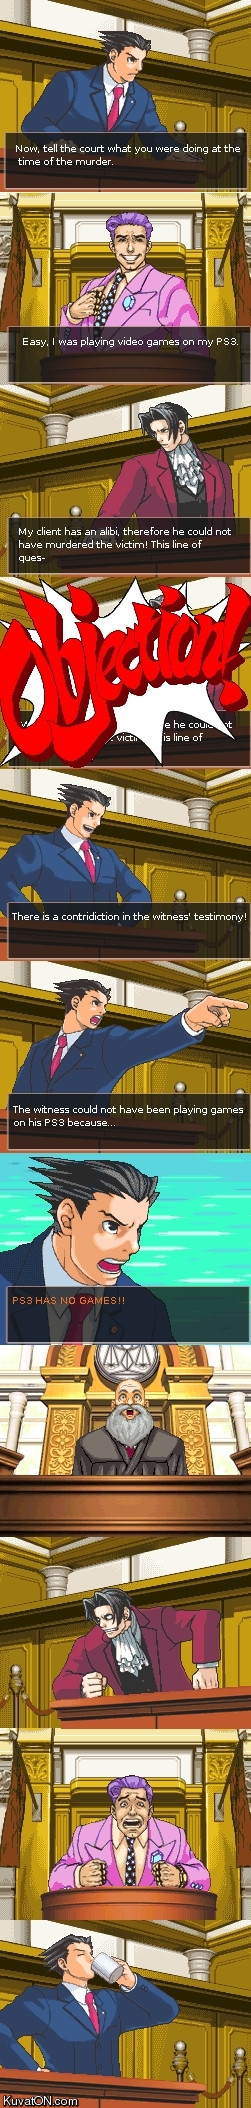 Playstation has no games!